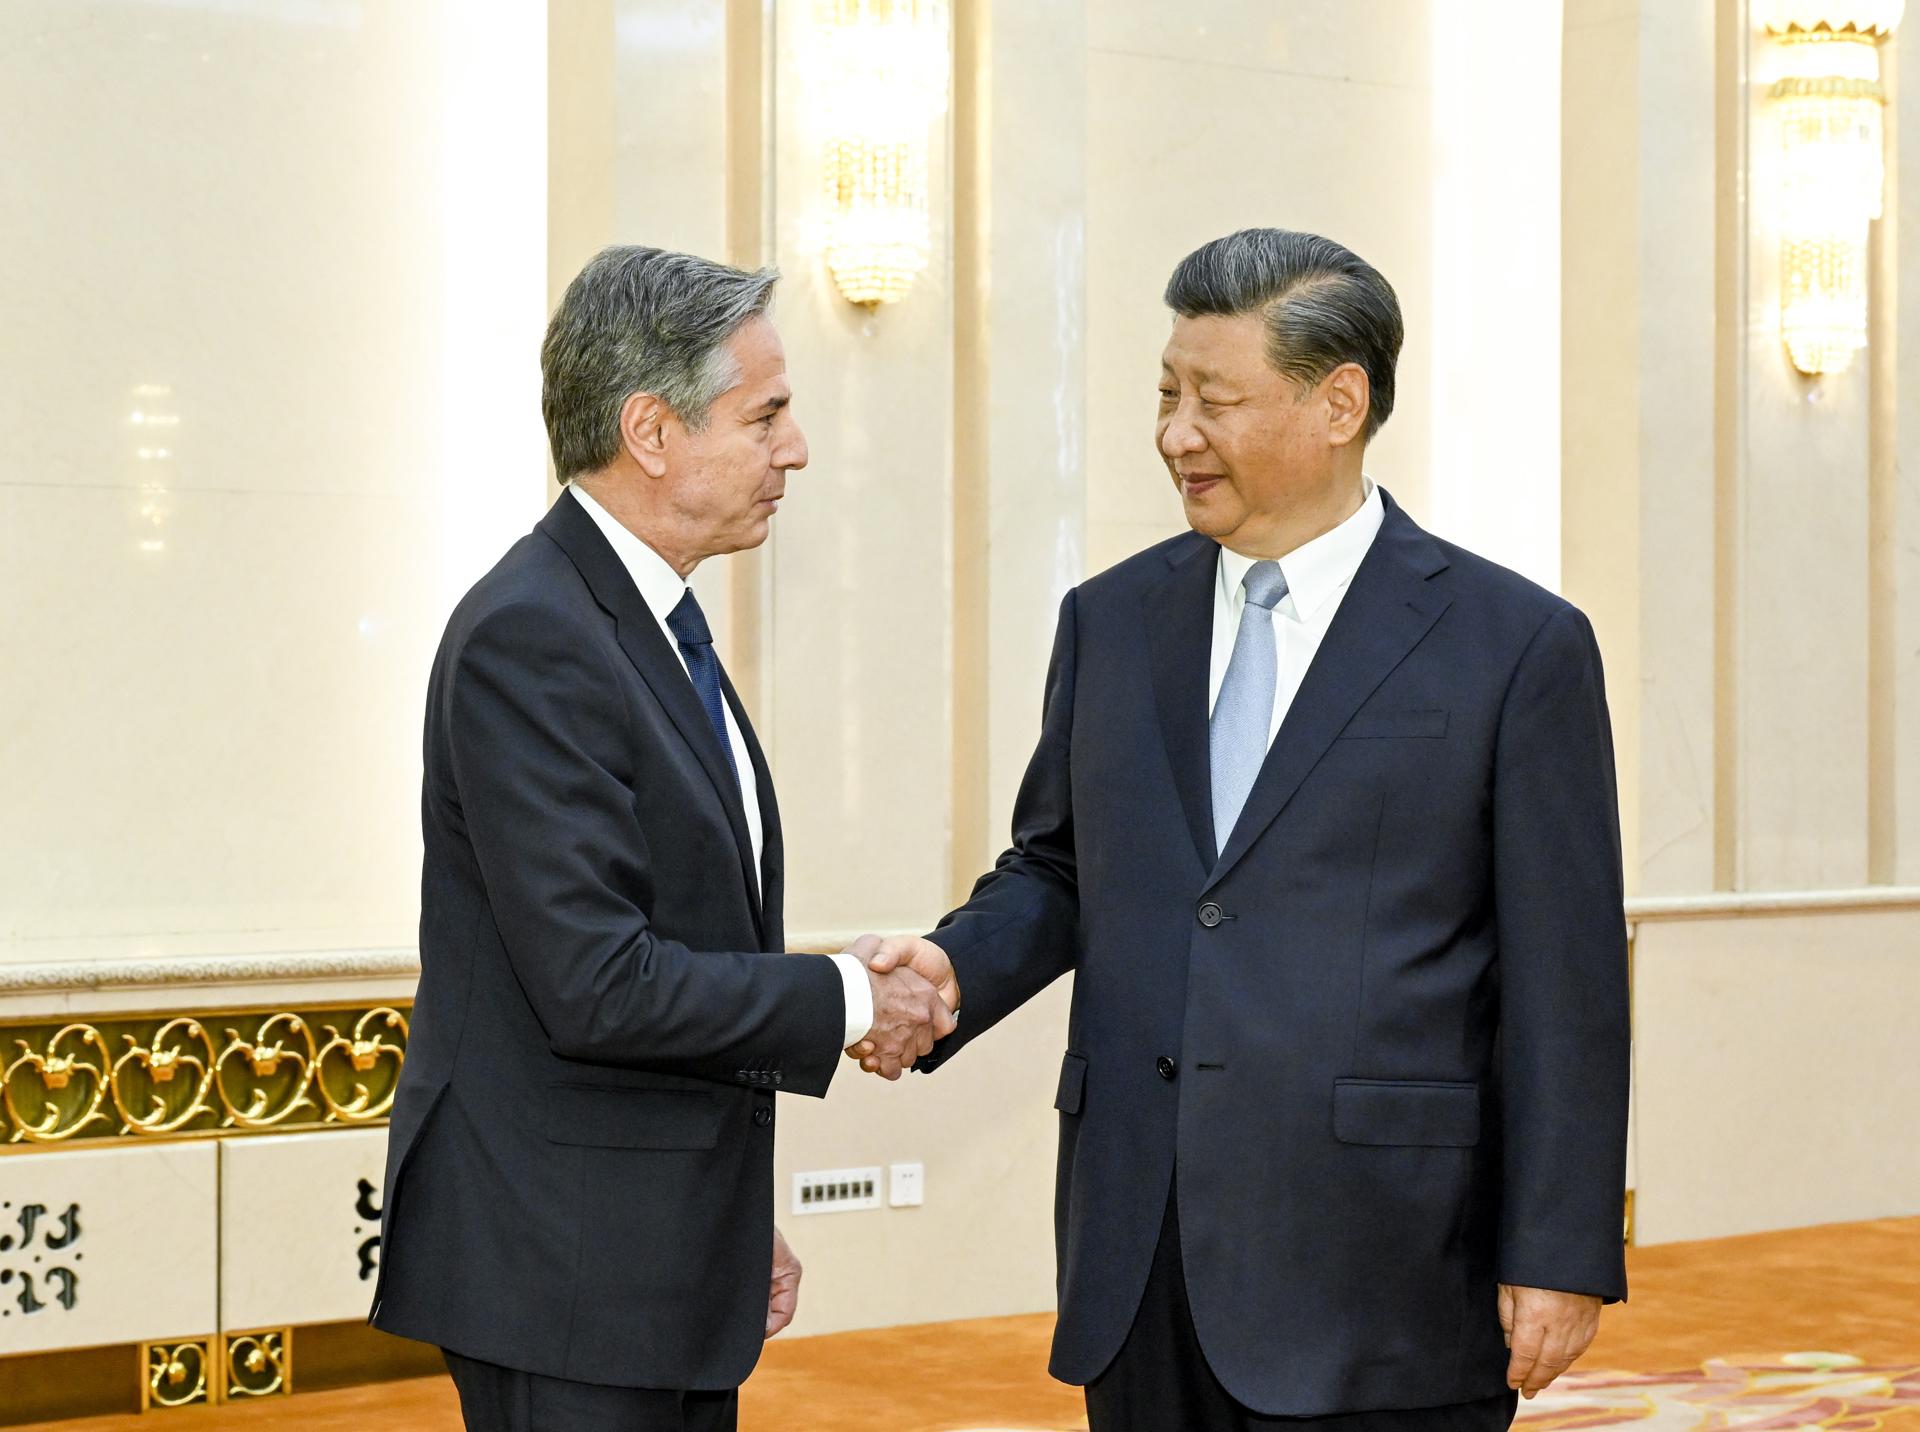 Xi a Blinken: “Las relaciones entre estados deben estar basadas en el respeto mutuo"